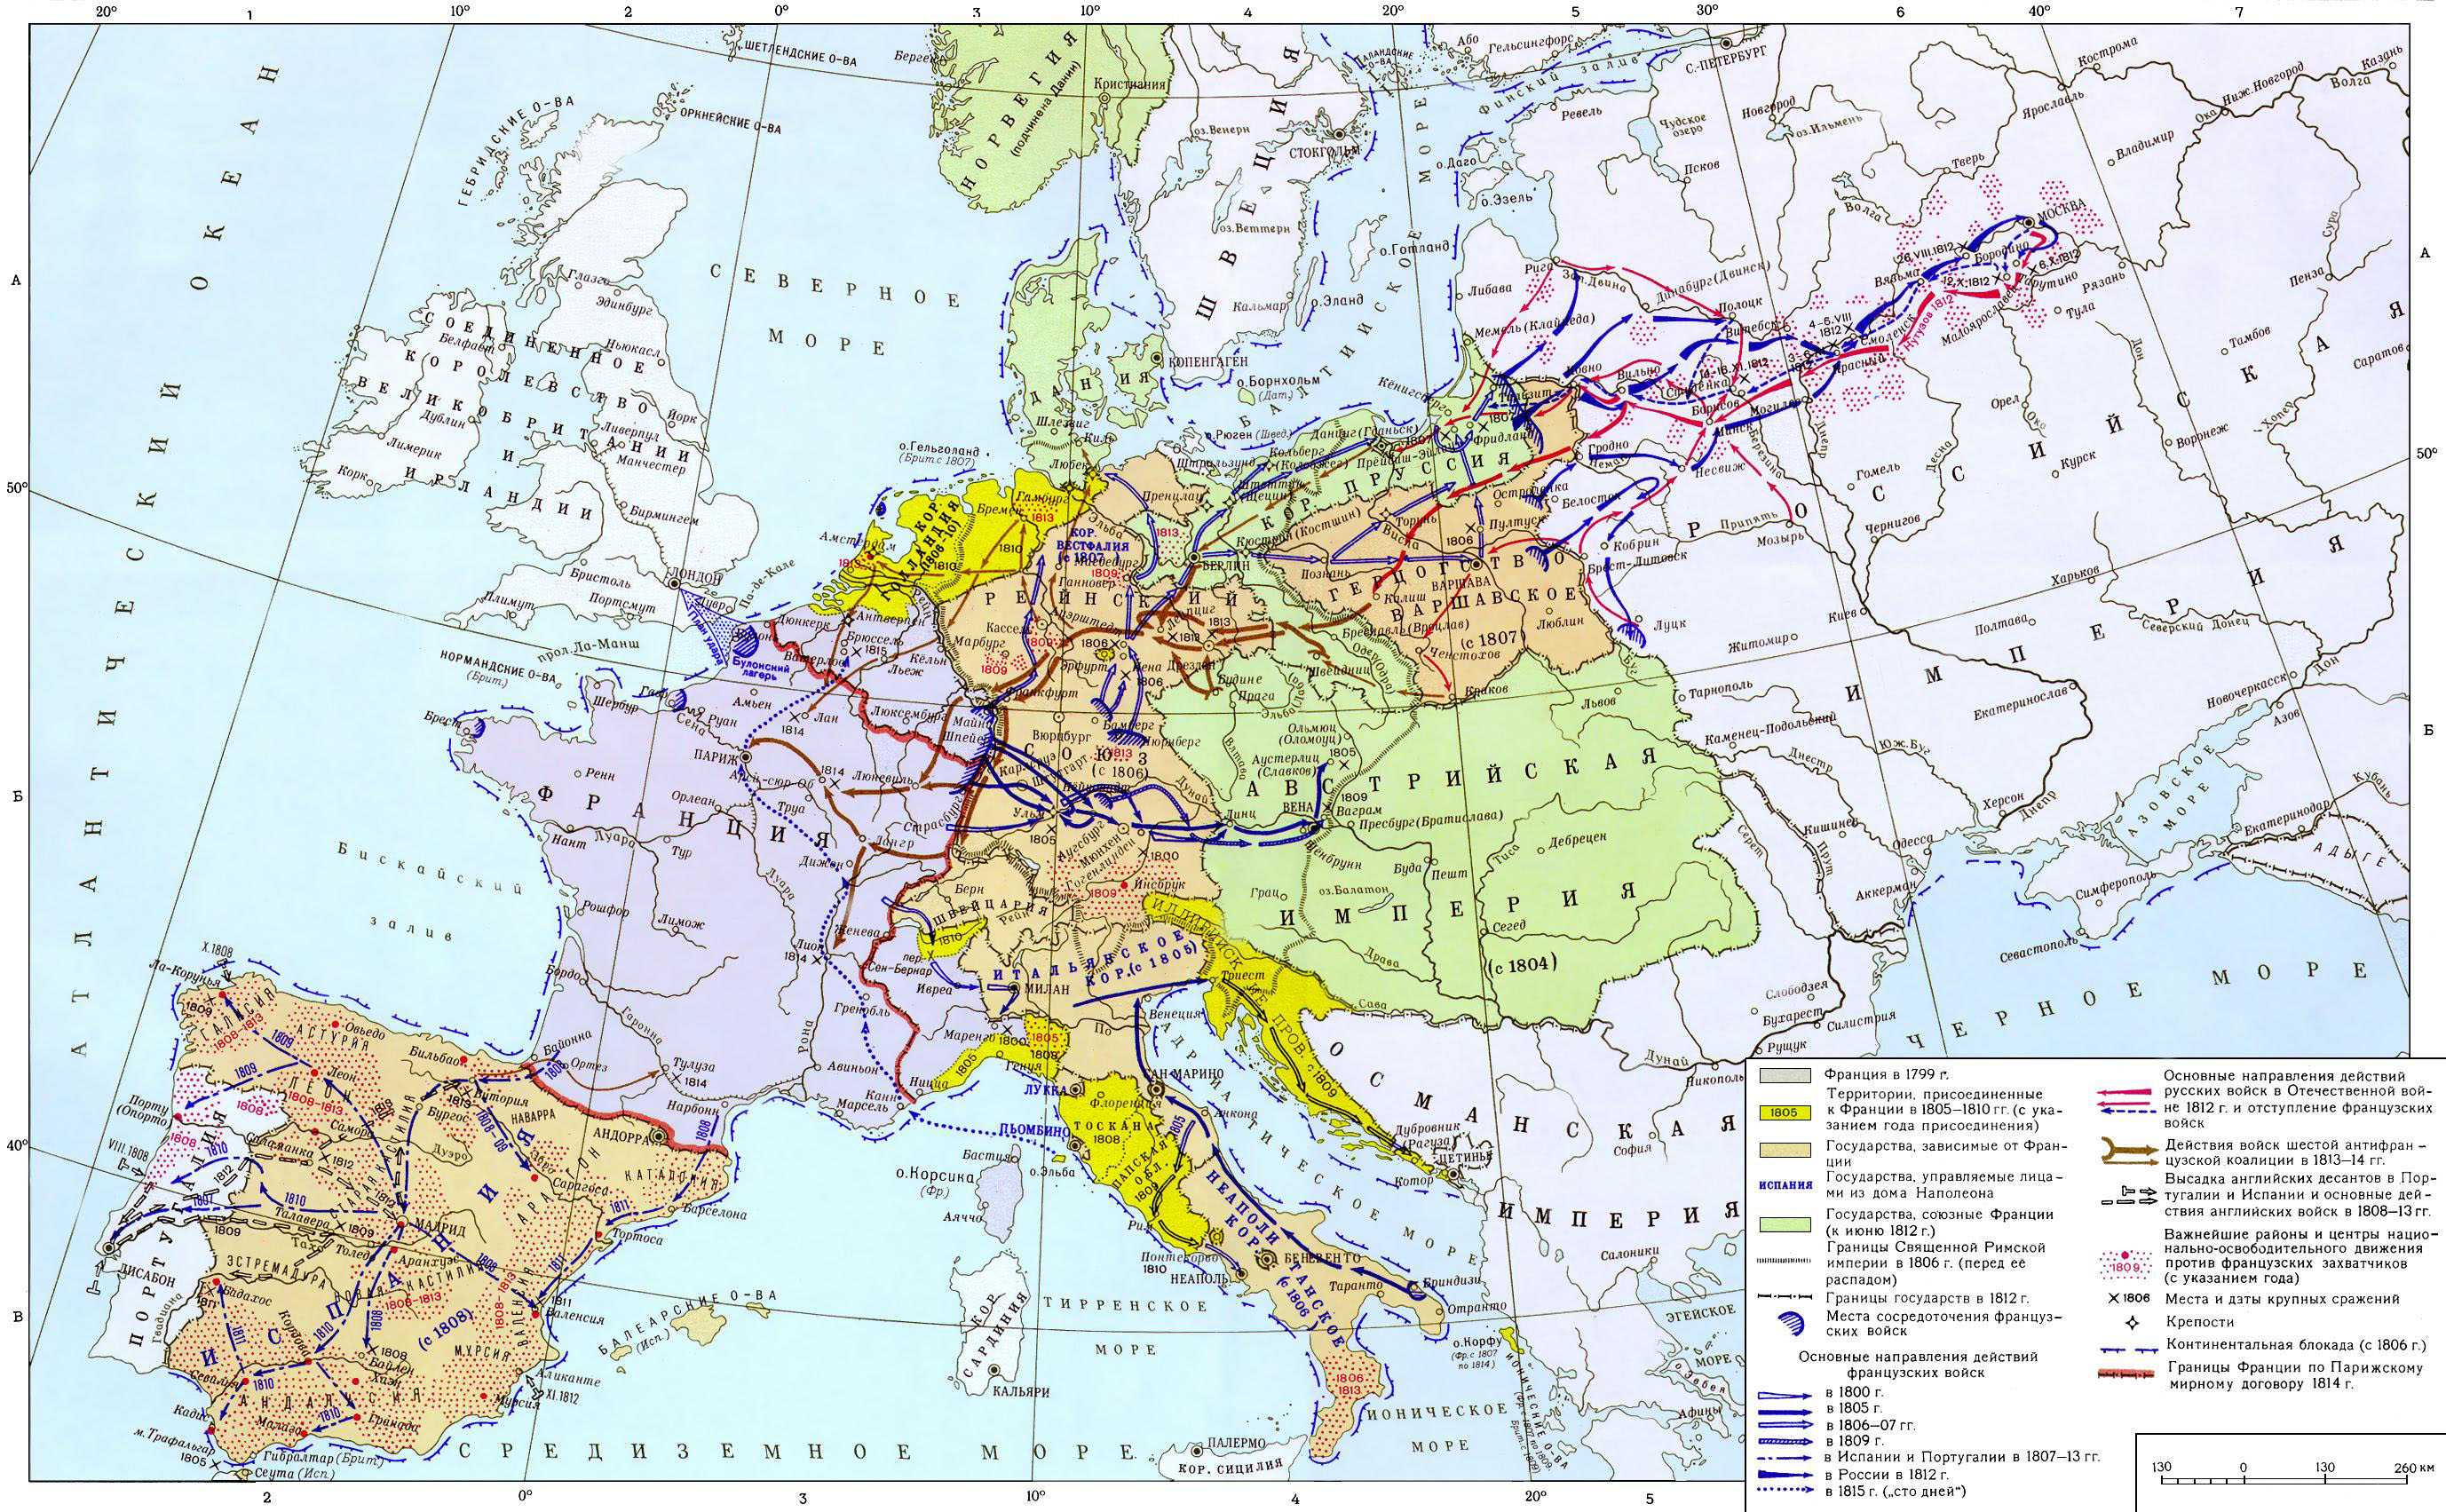 Наполеоновские войны карта. Карта Европа в период наполеоновских войн 1799-1815. Европа в период революционных и наполеоновских войн 1799-1815. Европа в годы наполеоновских войн 1800-1815. Карта войны Наполеона в Европе.